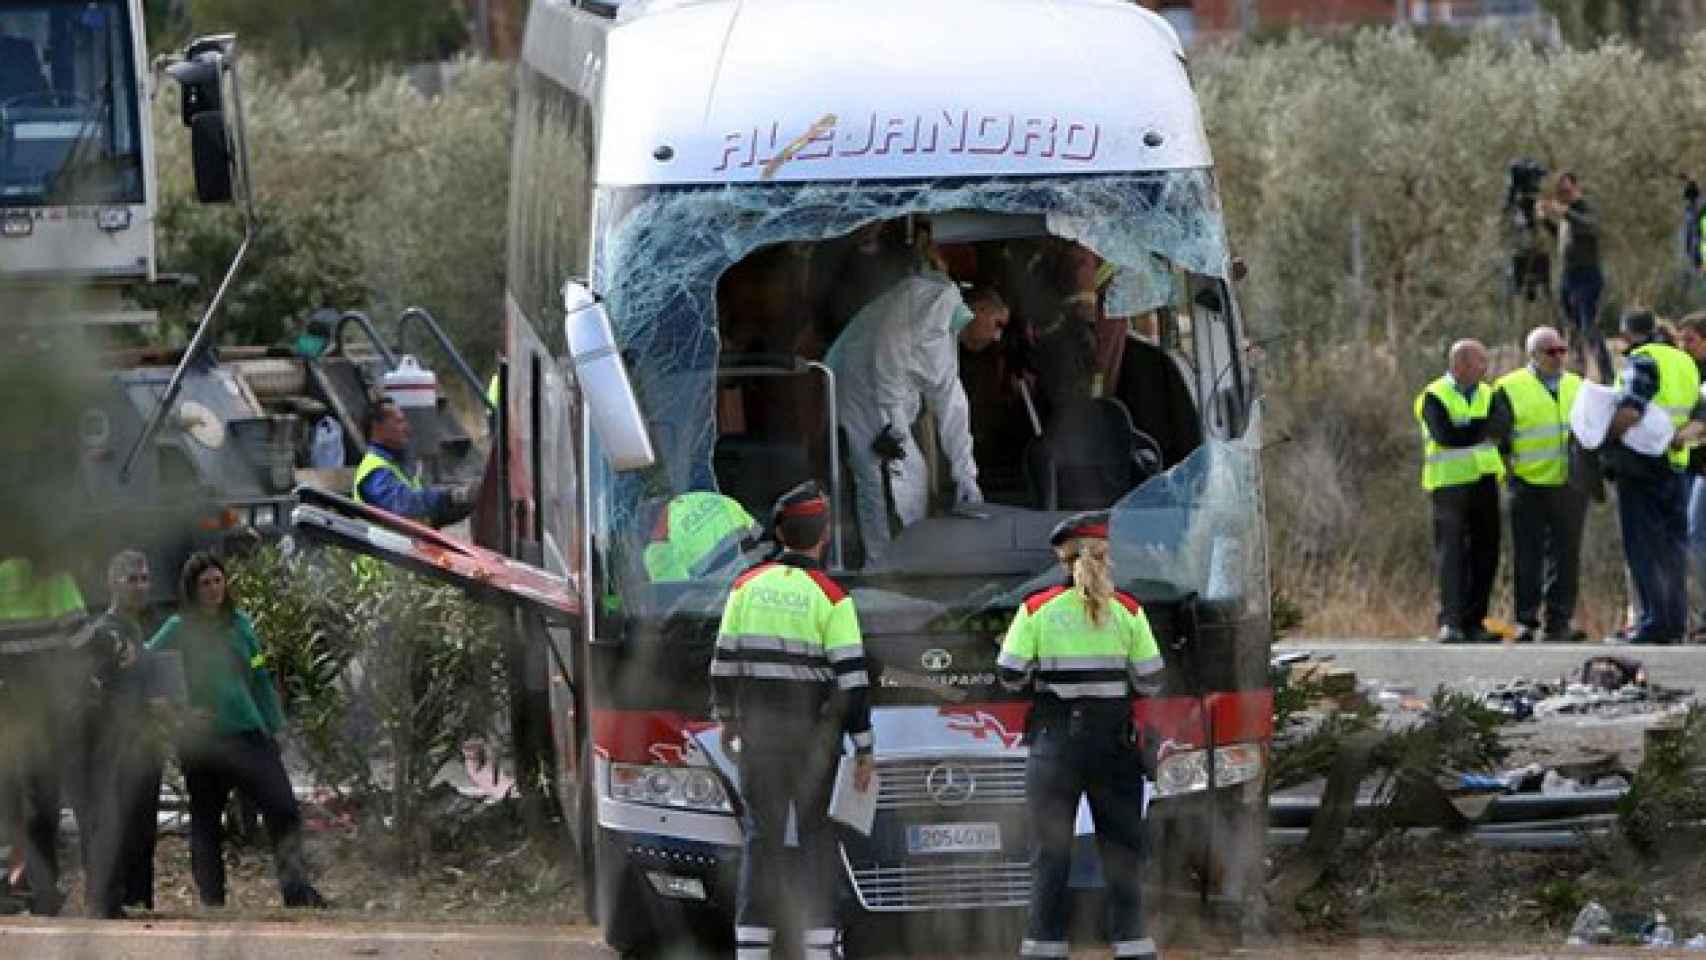 El autobús accidentado en Freginals | EFE